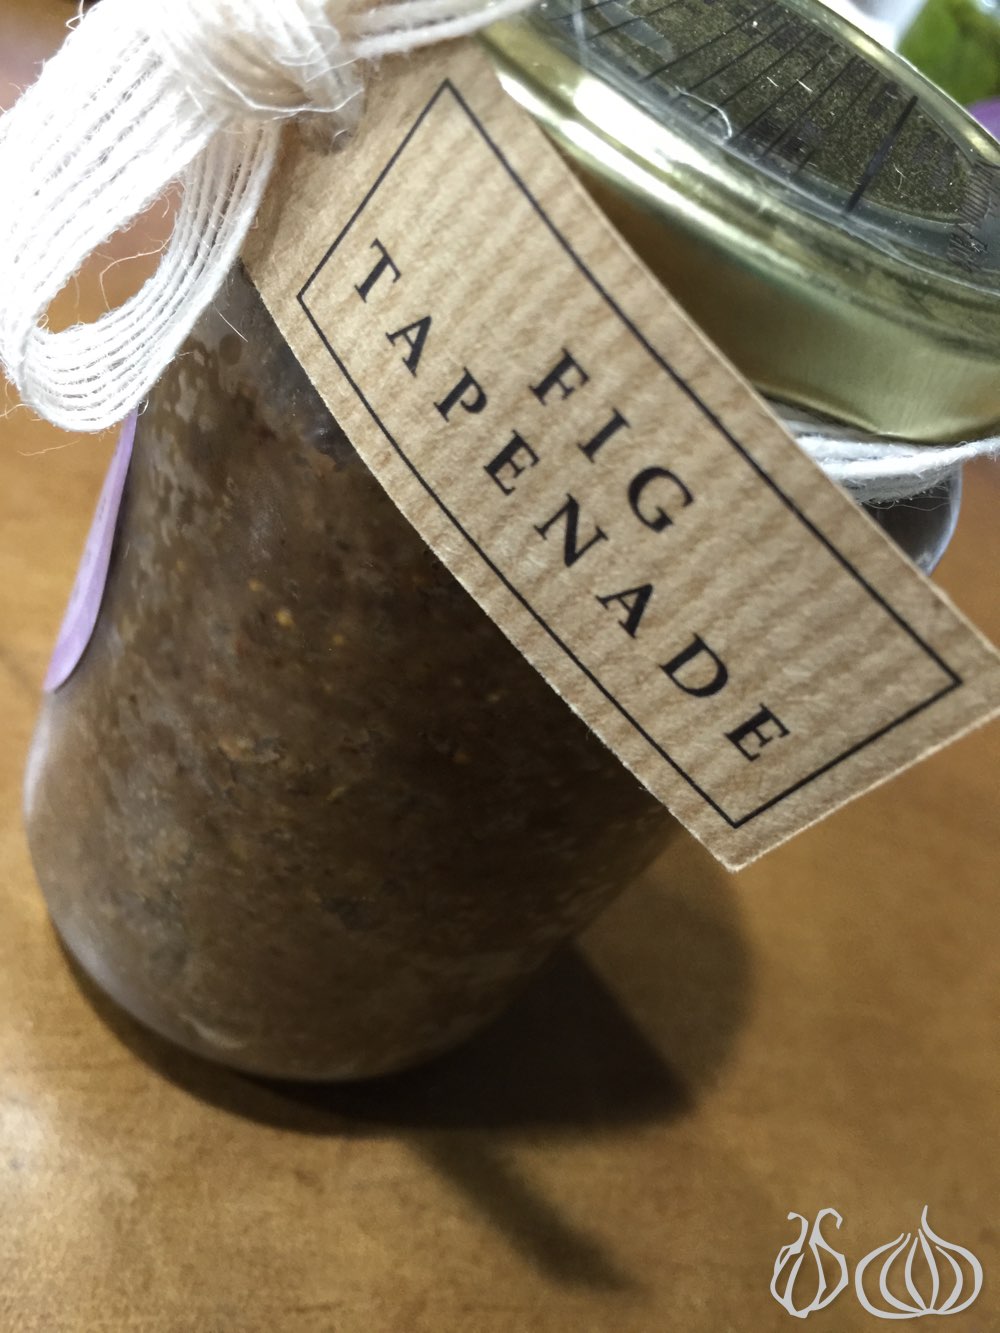 jar-homemade-dip-figs-pesto-tasty-lebanon52014-11-24-11-22-19